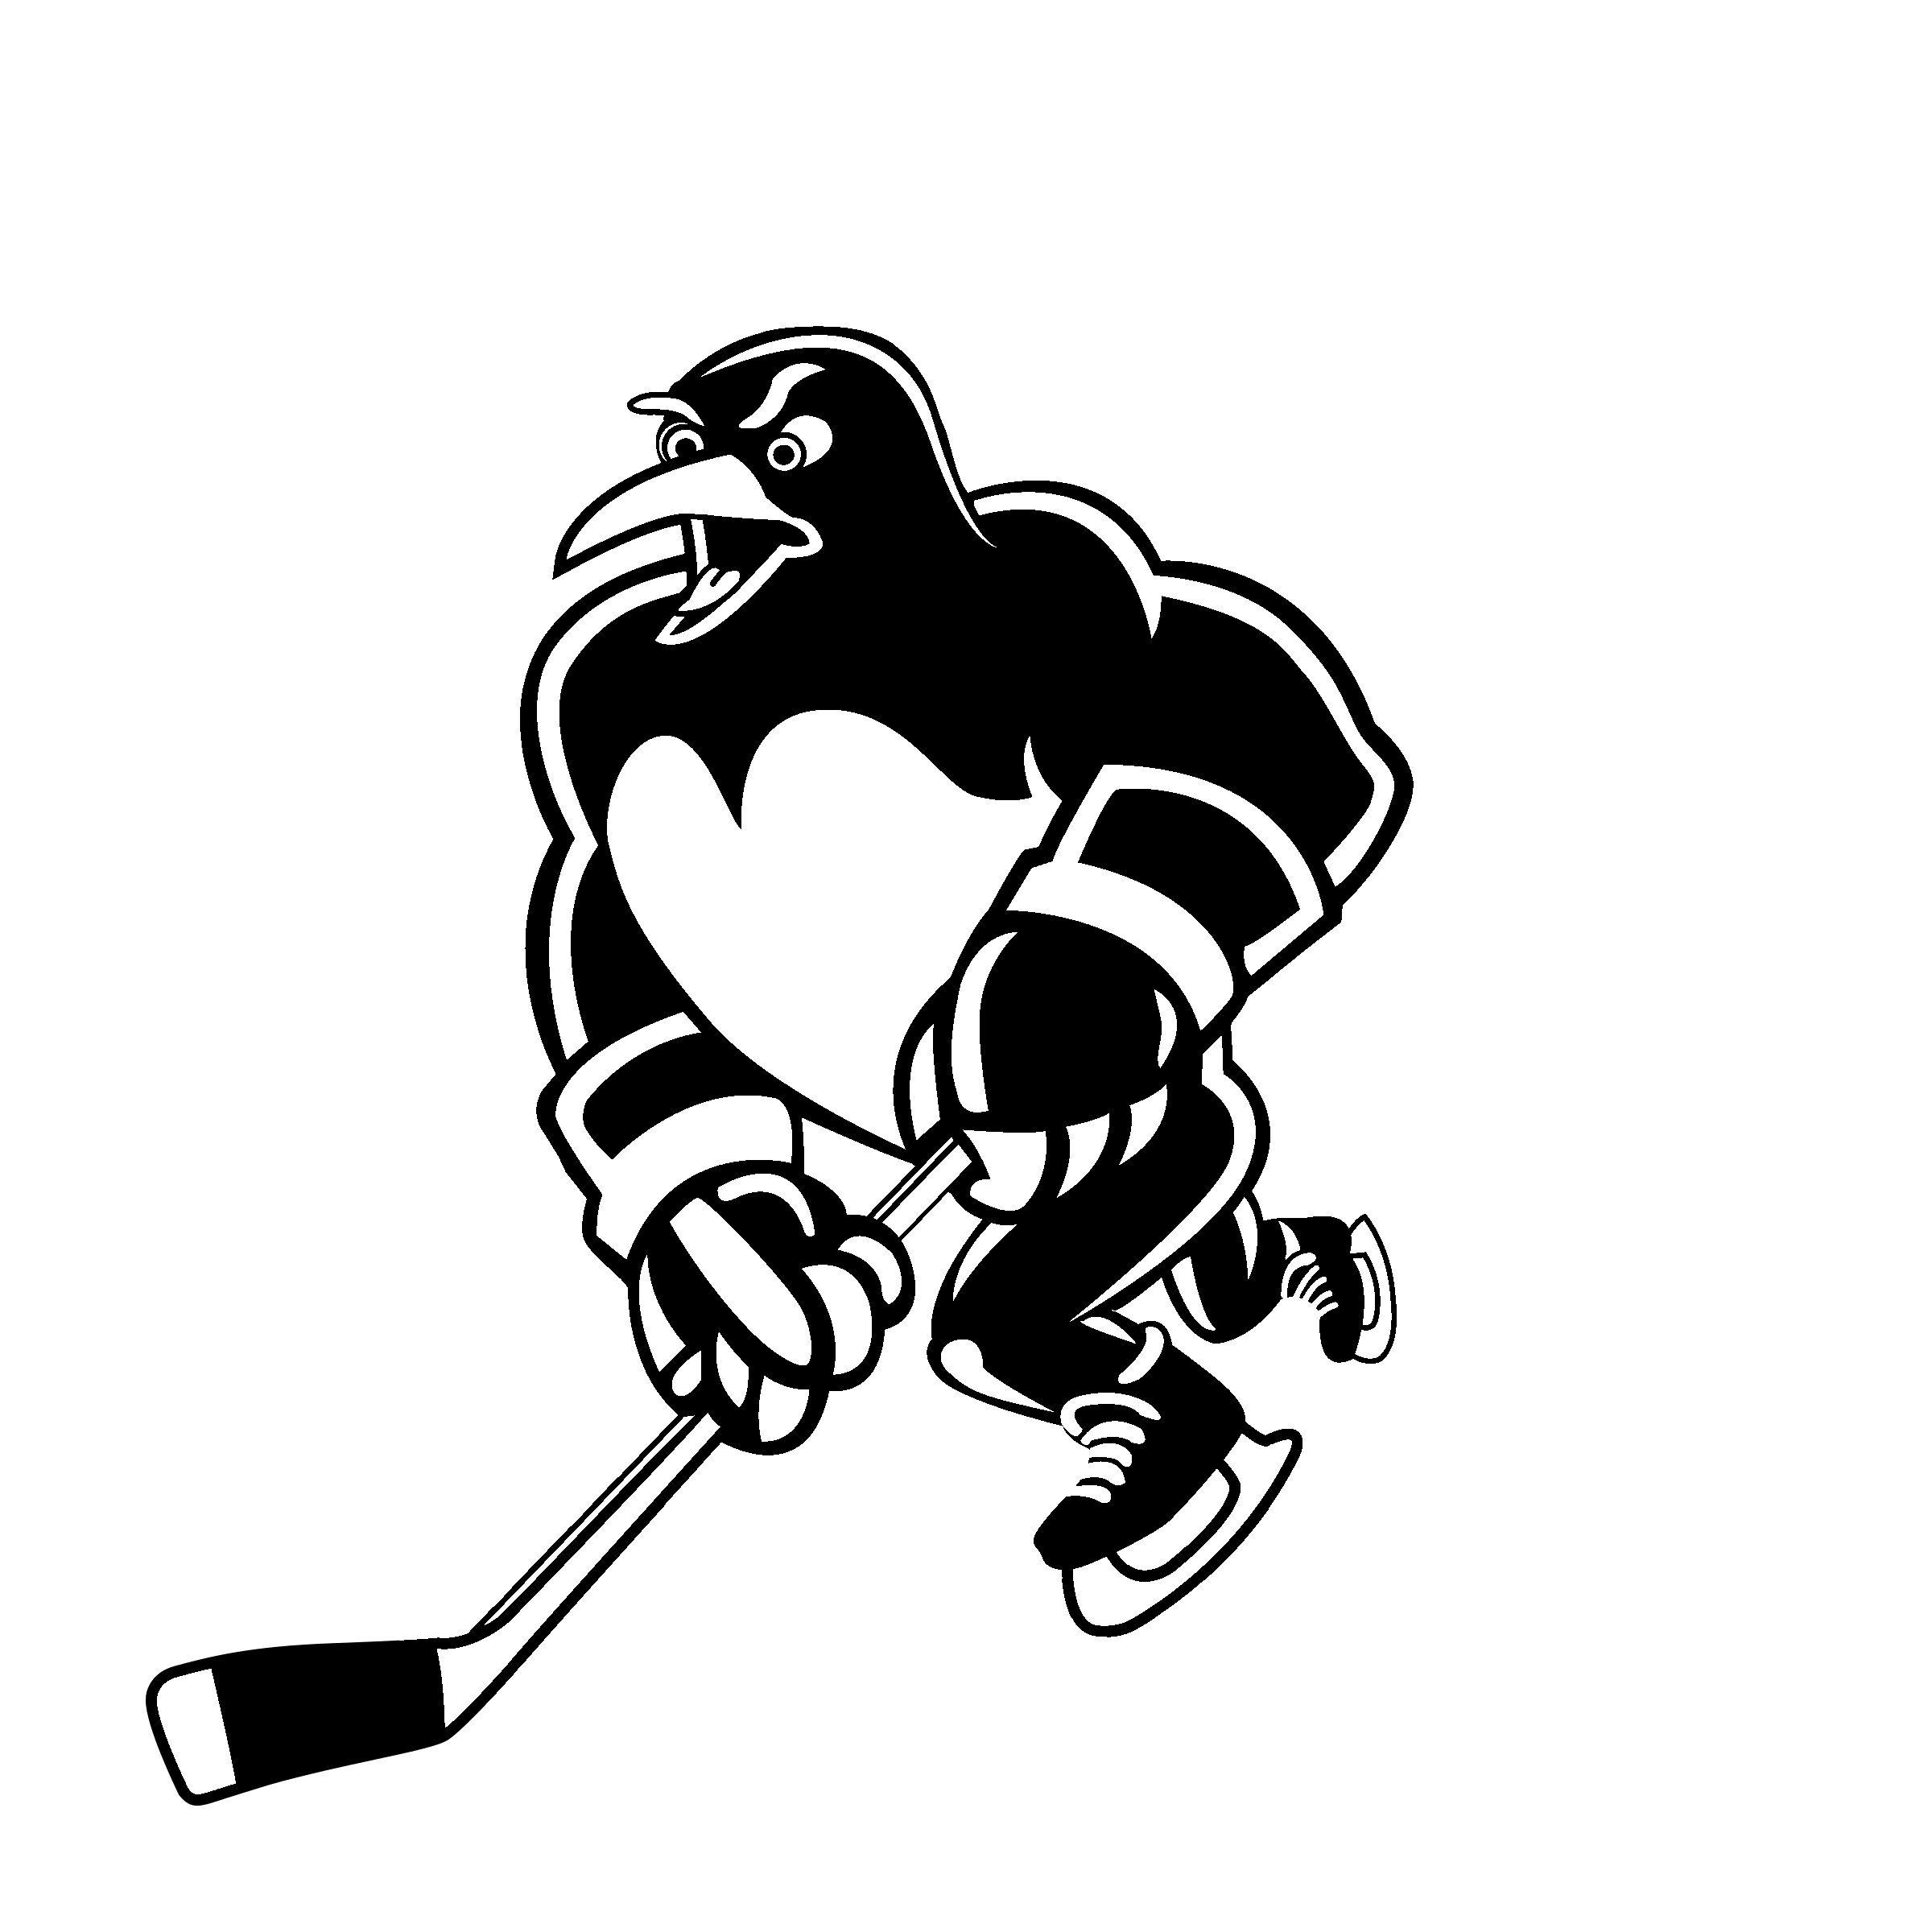 Black and White Penguins Logo - Wilkes Barre Scranton Penguins Logo PNG Transparent & SVG Vector ...